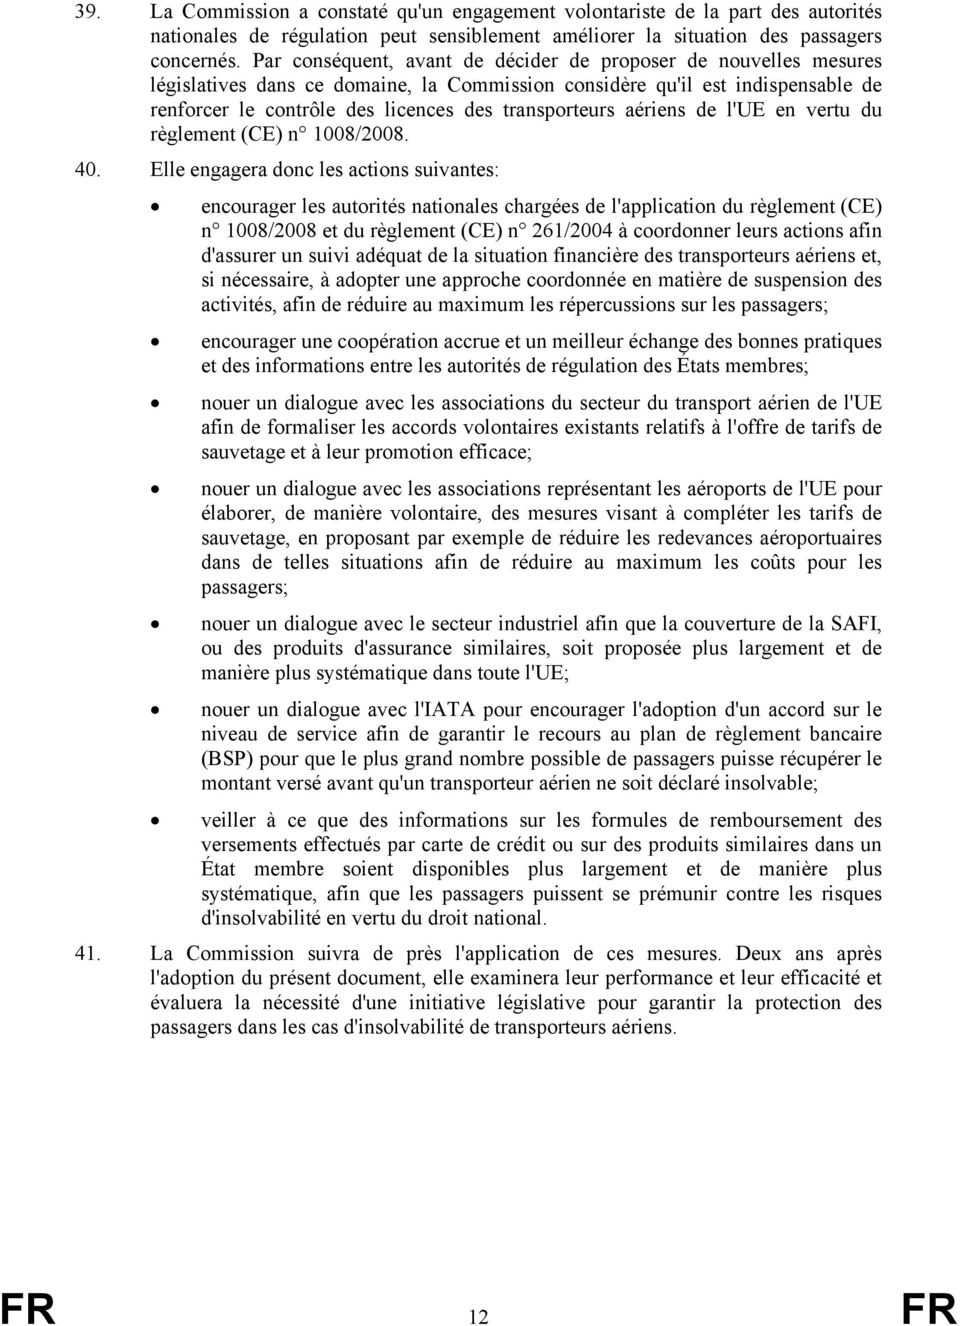 aériens de l'ue en vertu du règlement (CE) n 1008/2008. 40.